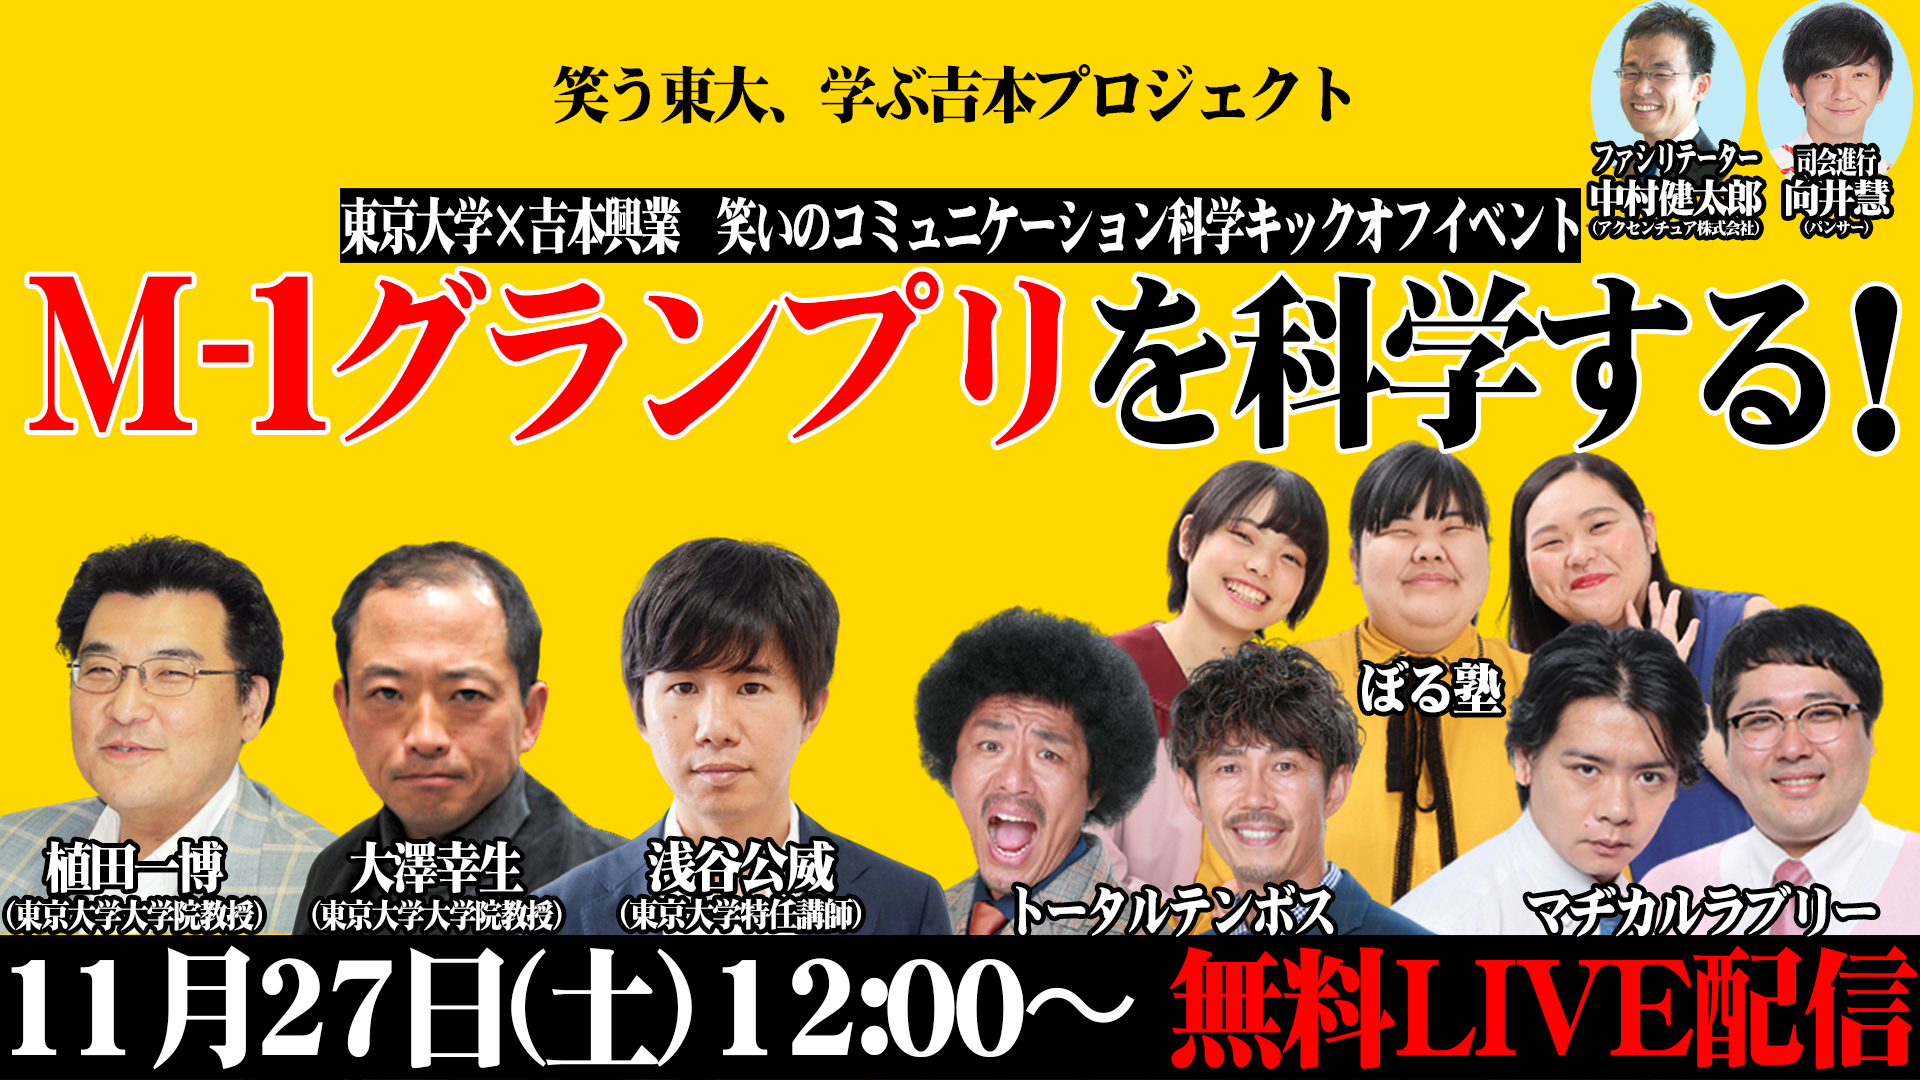 東京大学×吉本興業 笑いのコミュニケーション科学キックオフイベント「M-1グランプリを科学する！」開催